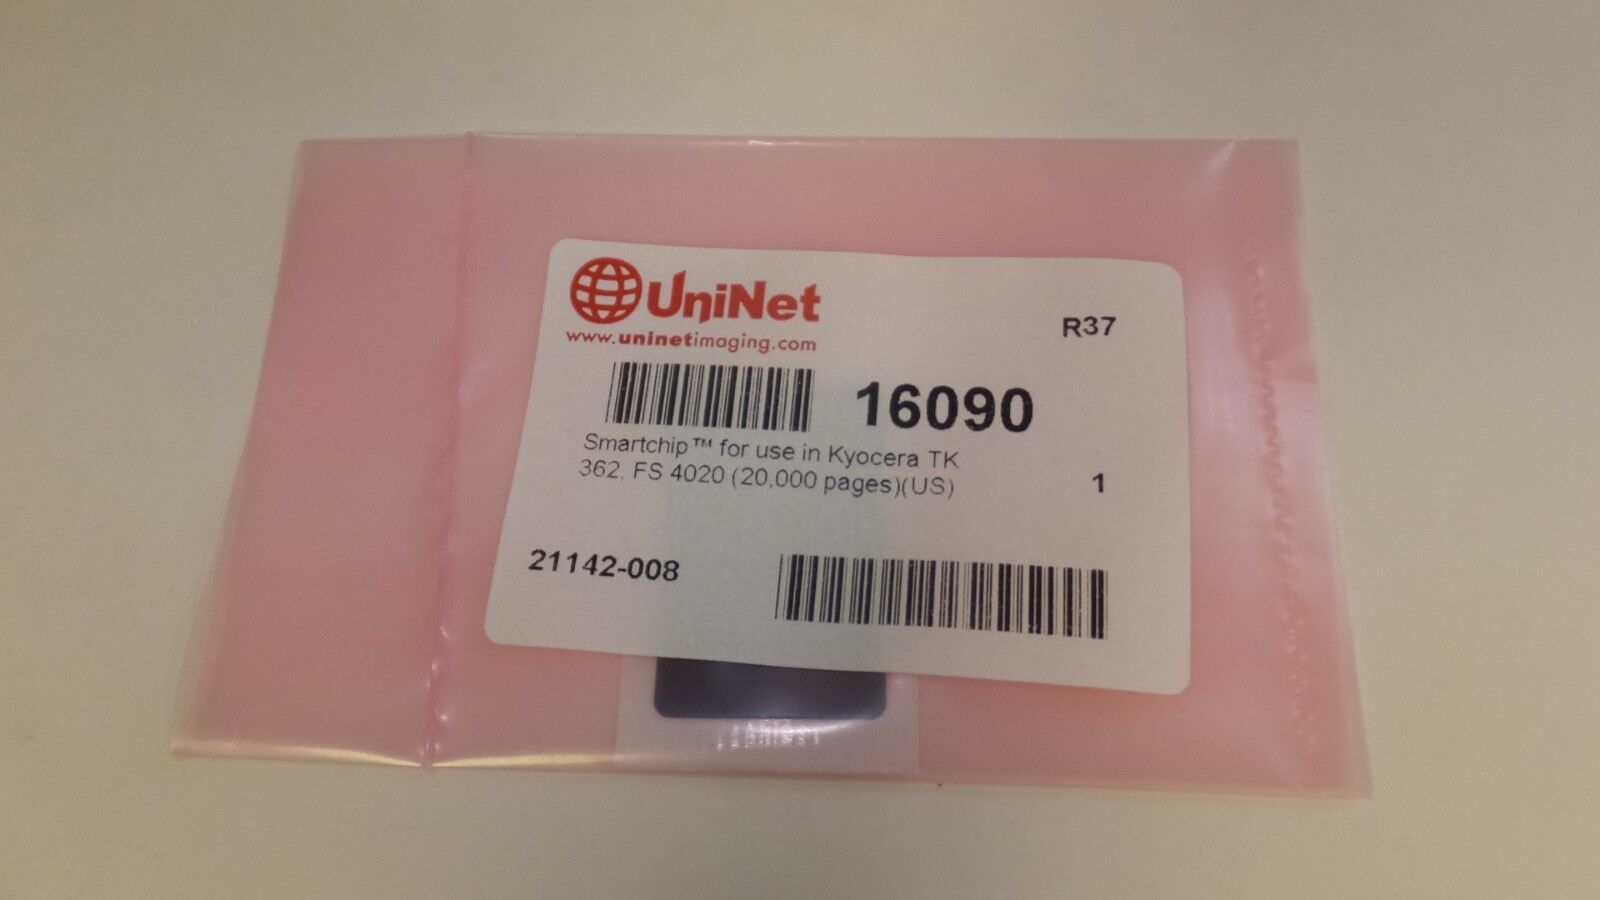 UniNet Smartchip Toner Cartridge Chip for Kyocera TK-362, FS 4020 (20,000 Pages)